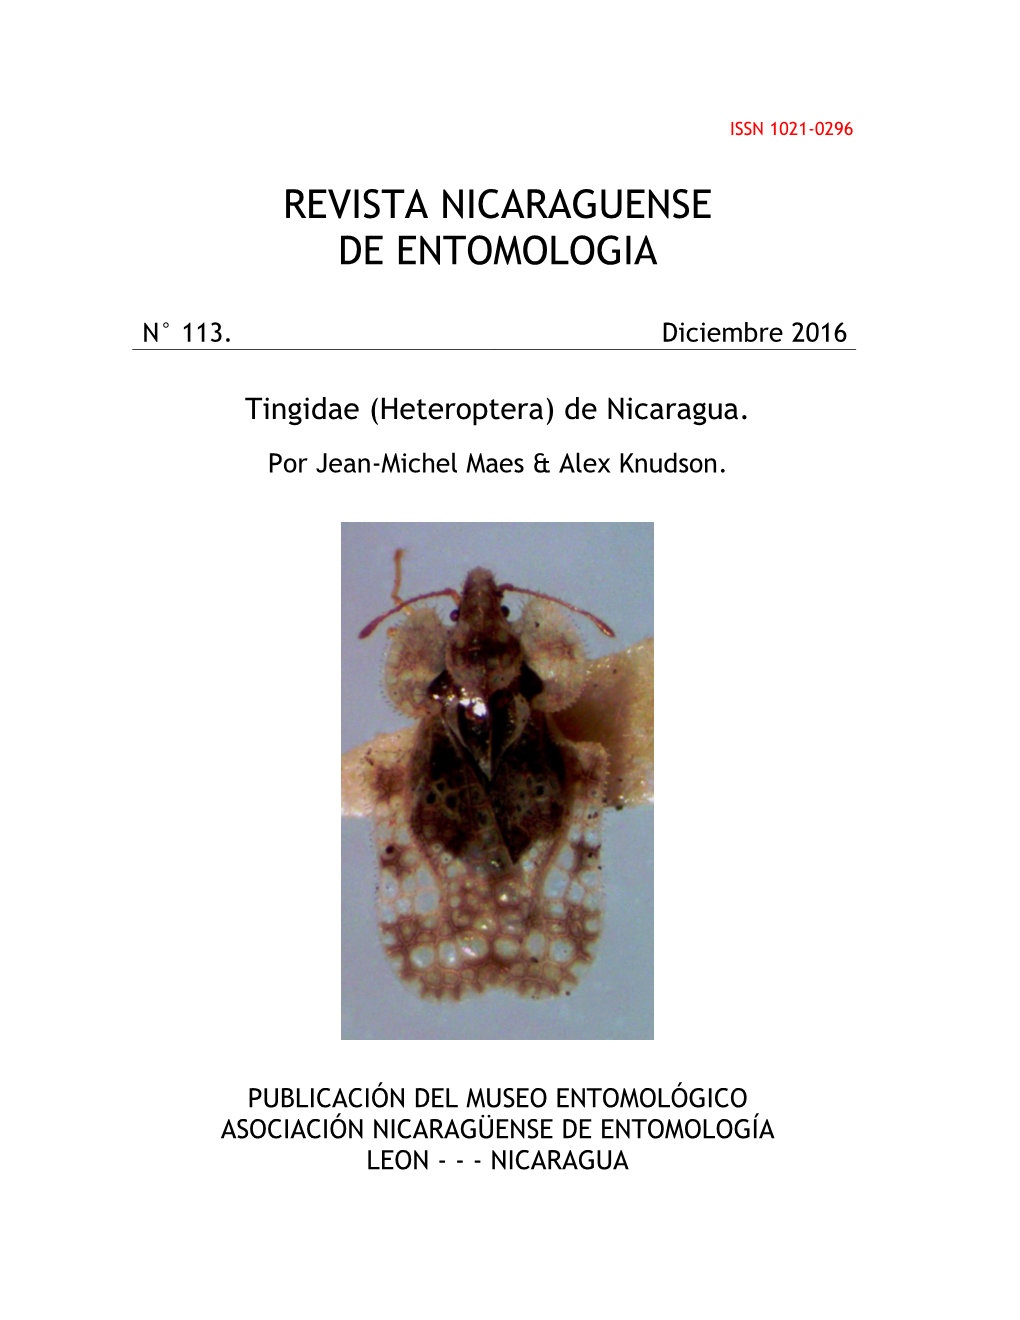 Tingidae (Heteroptera) De Nicaragua